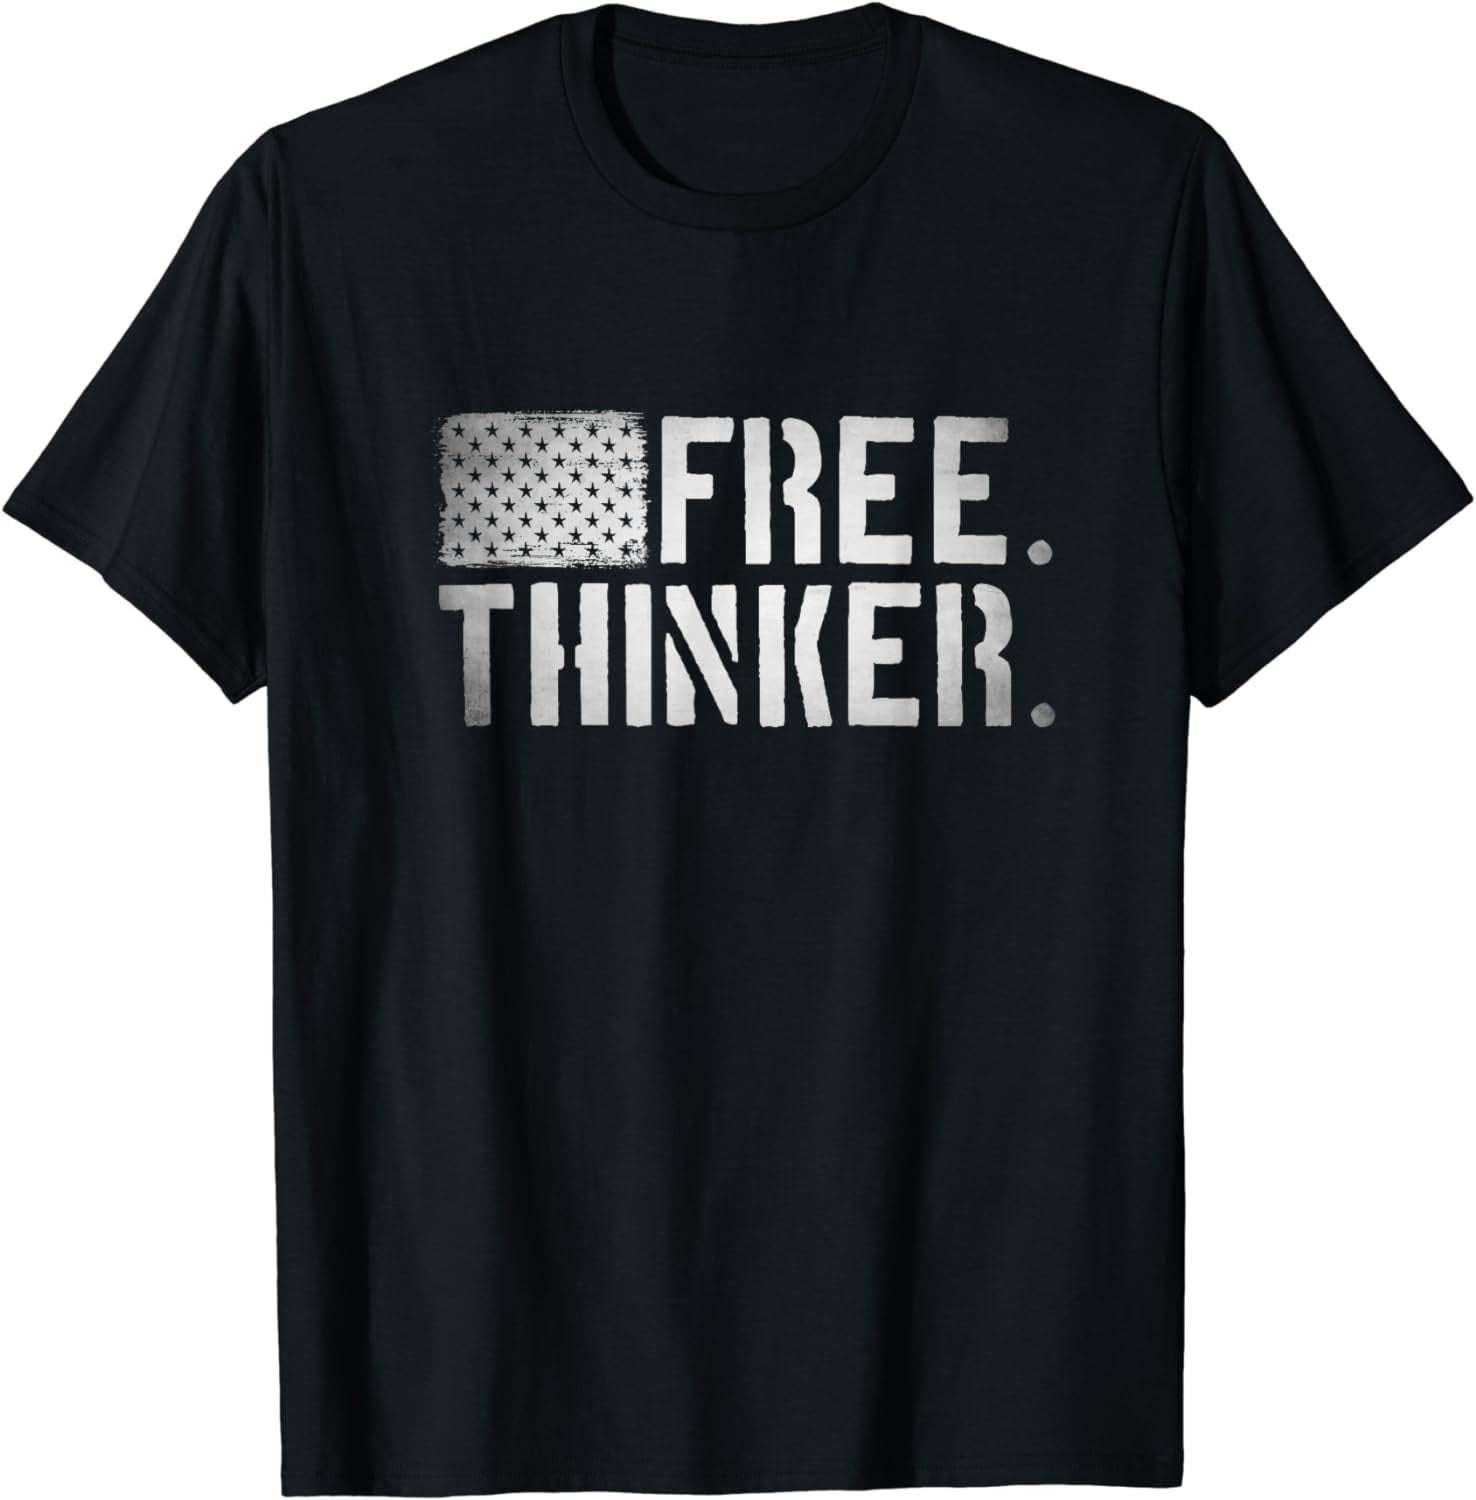 Free. Thinker. - Patriotic Free Thinker, USA American Flag T-Shirt ...